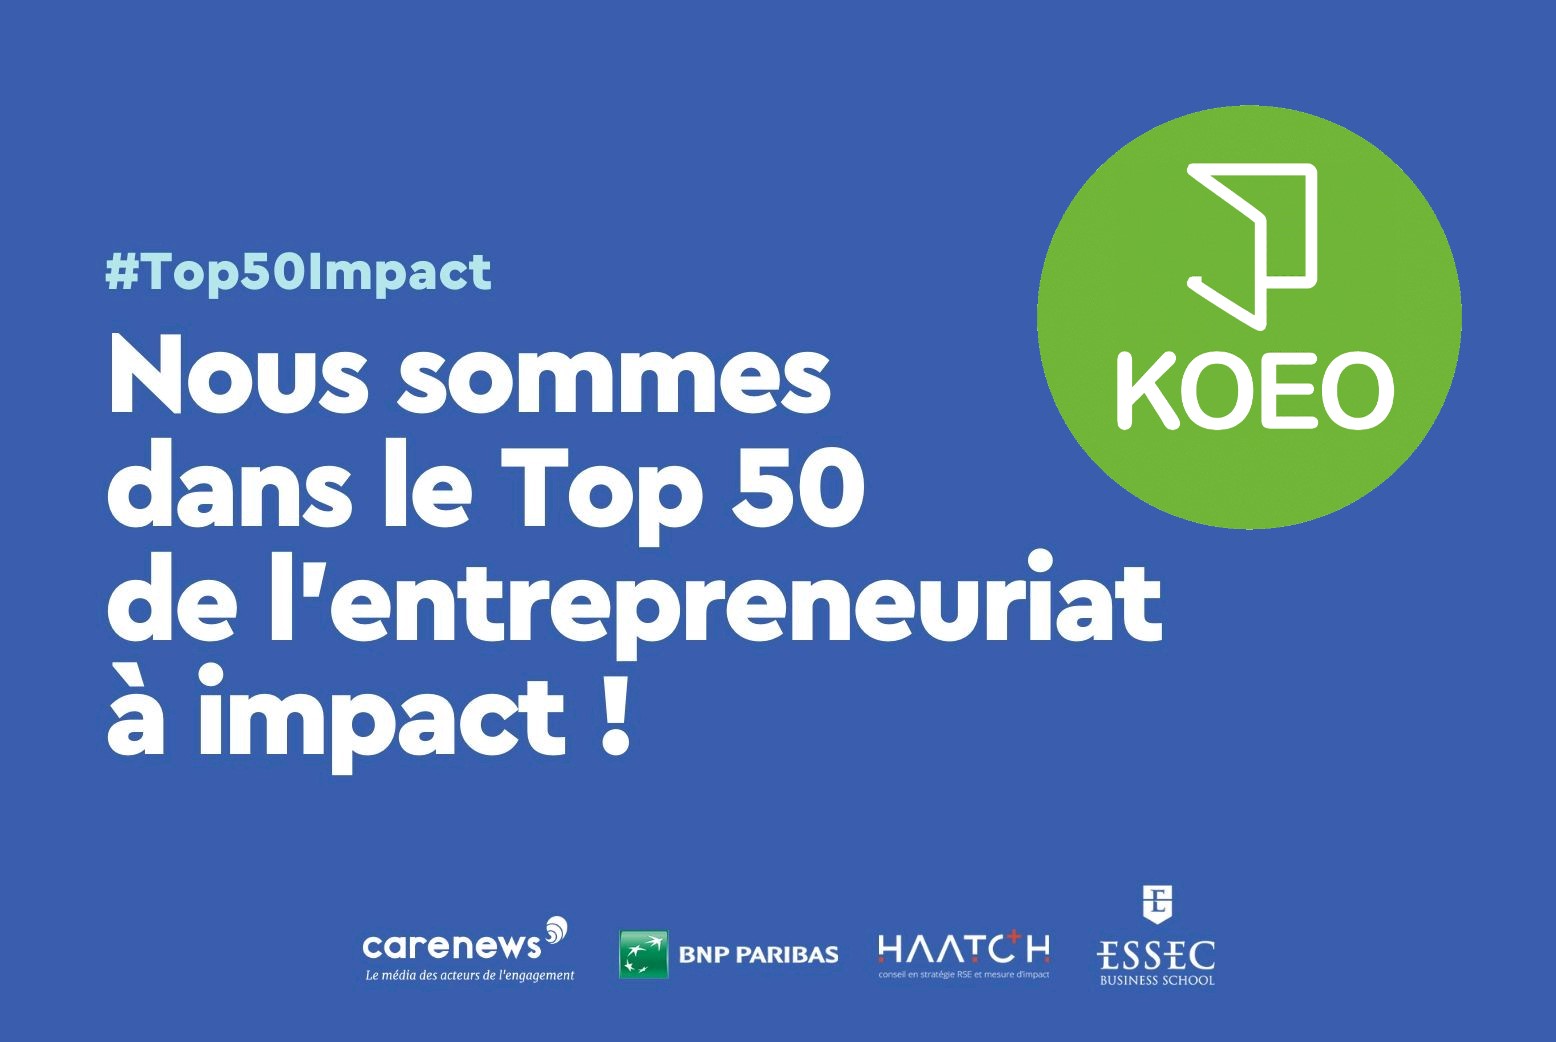 KOEO pour la seconde année dans le TOP50 des entreprises à Impact !